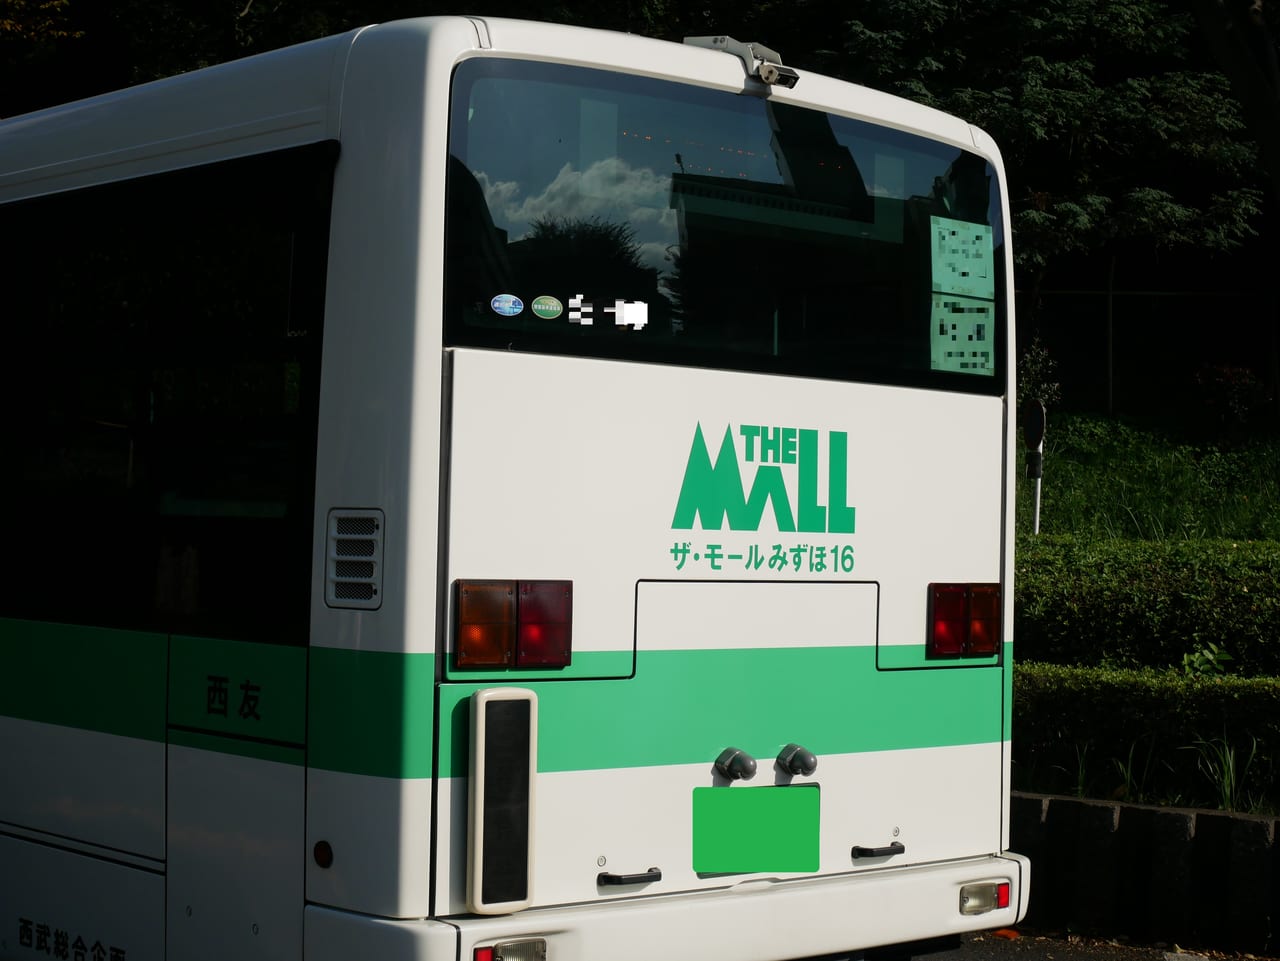 「ザ・モールみずほ16」の送迎バス